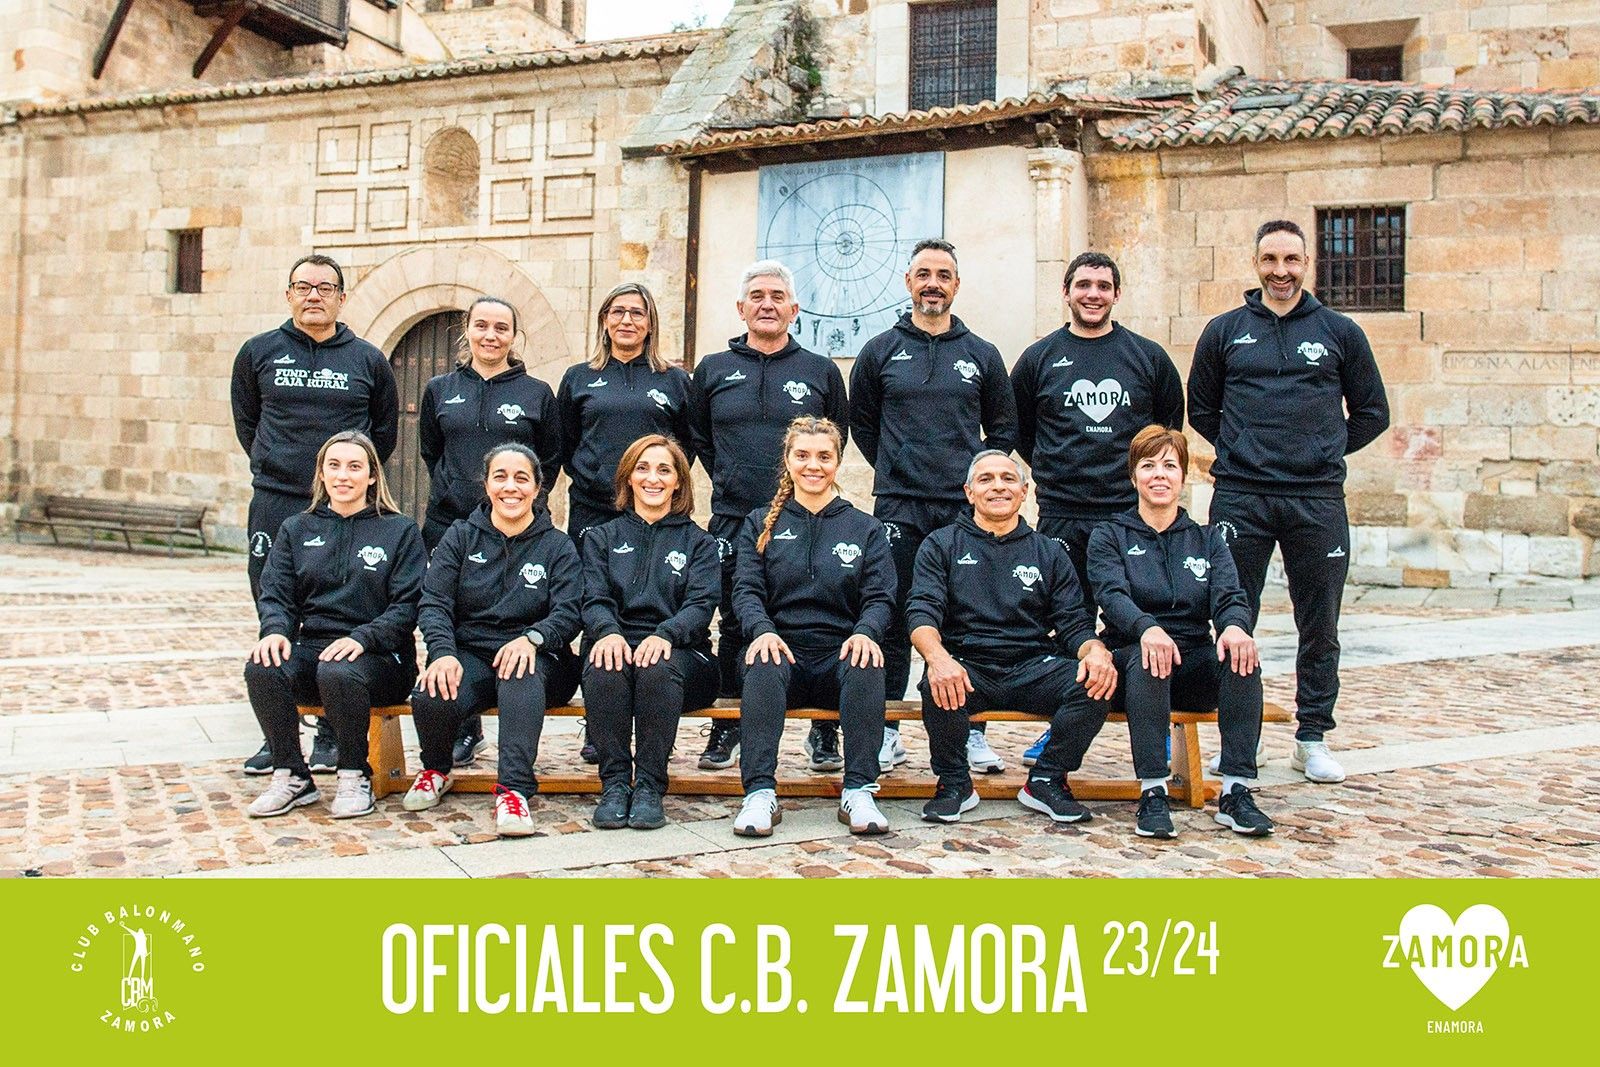 GALERIA | Todos los equipos del Balonmano Zamora Enamora